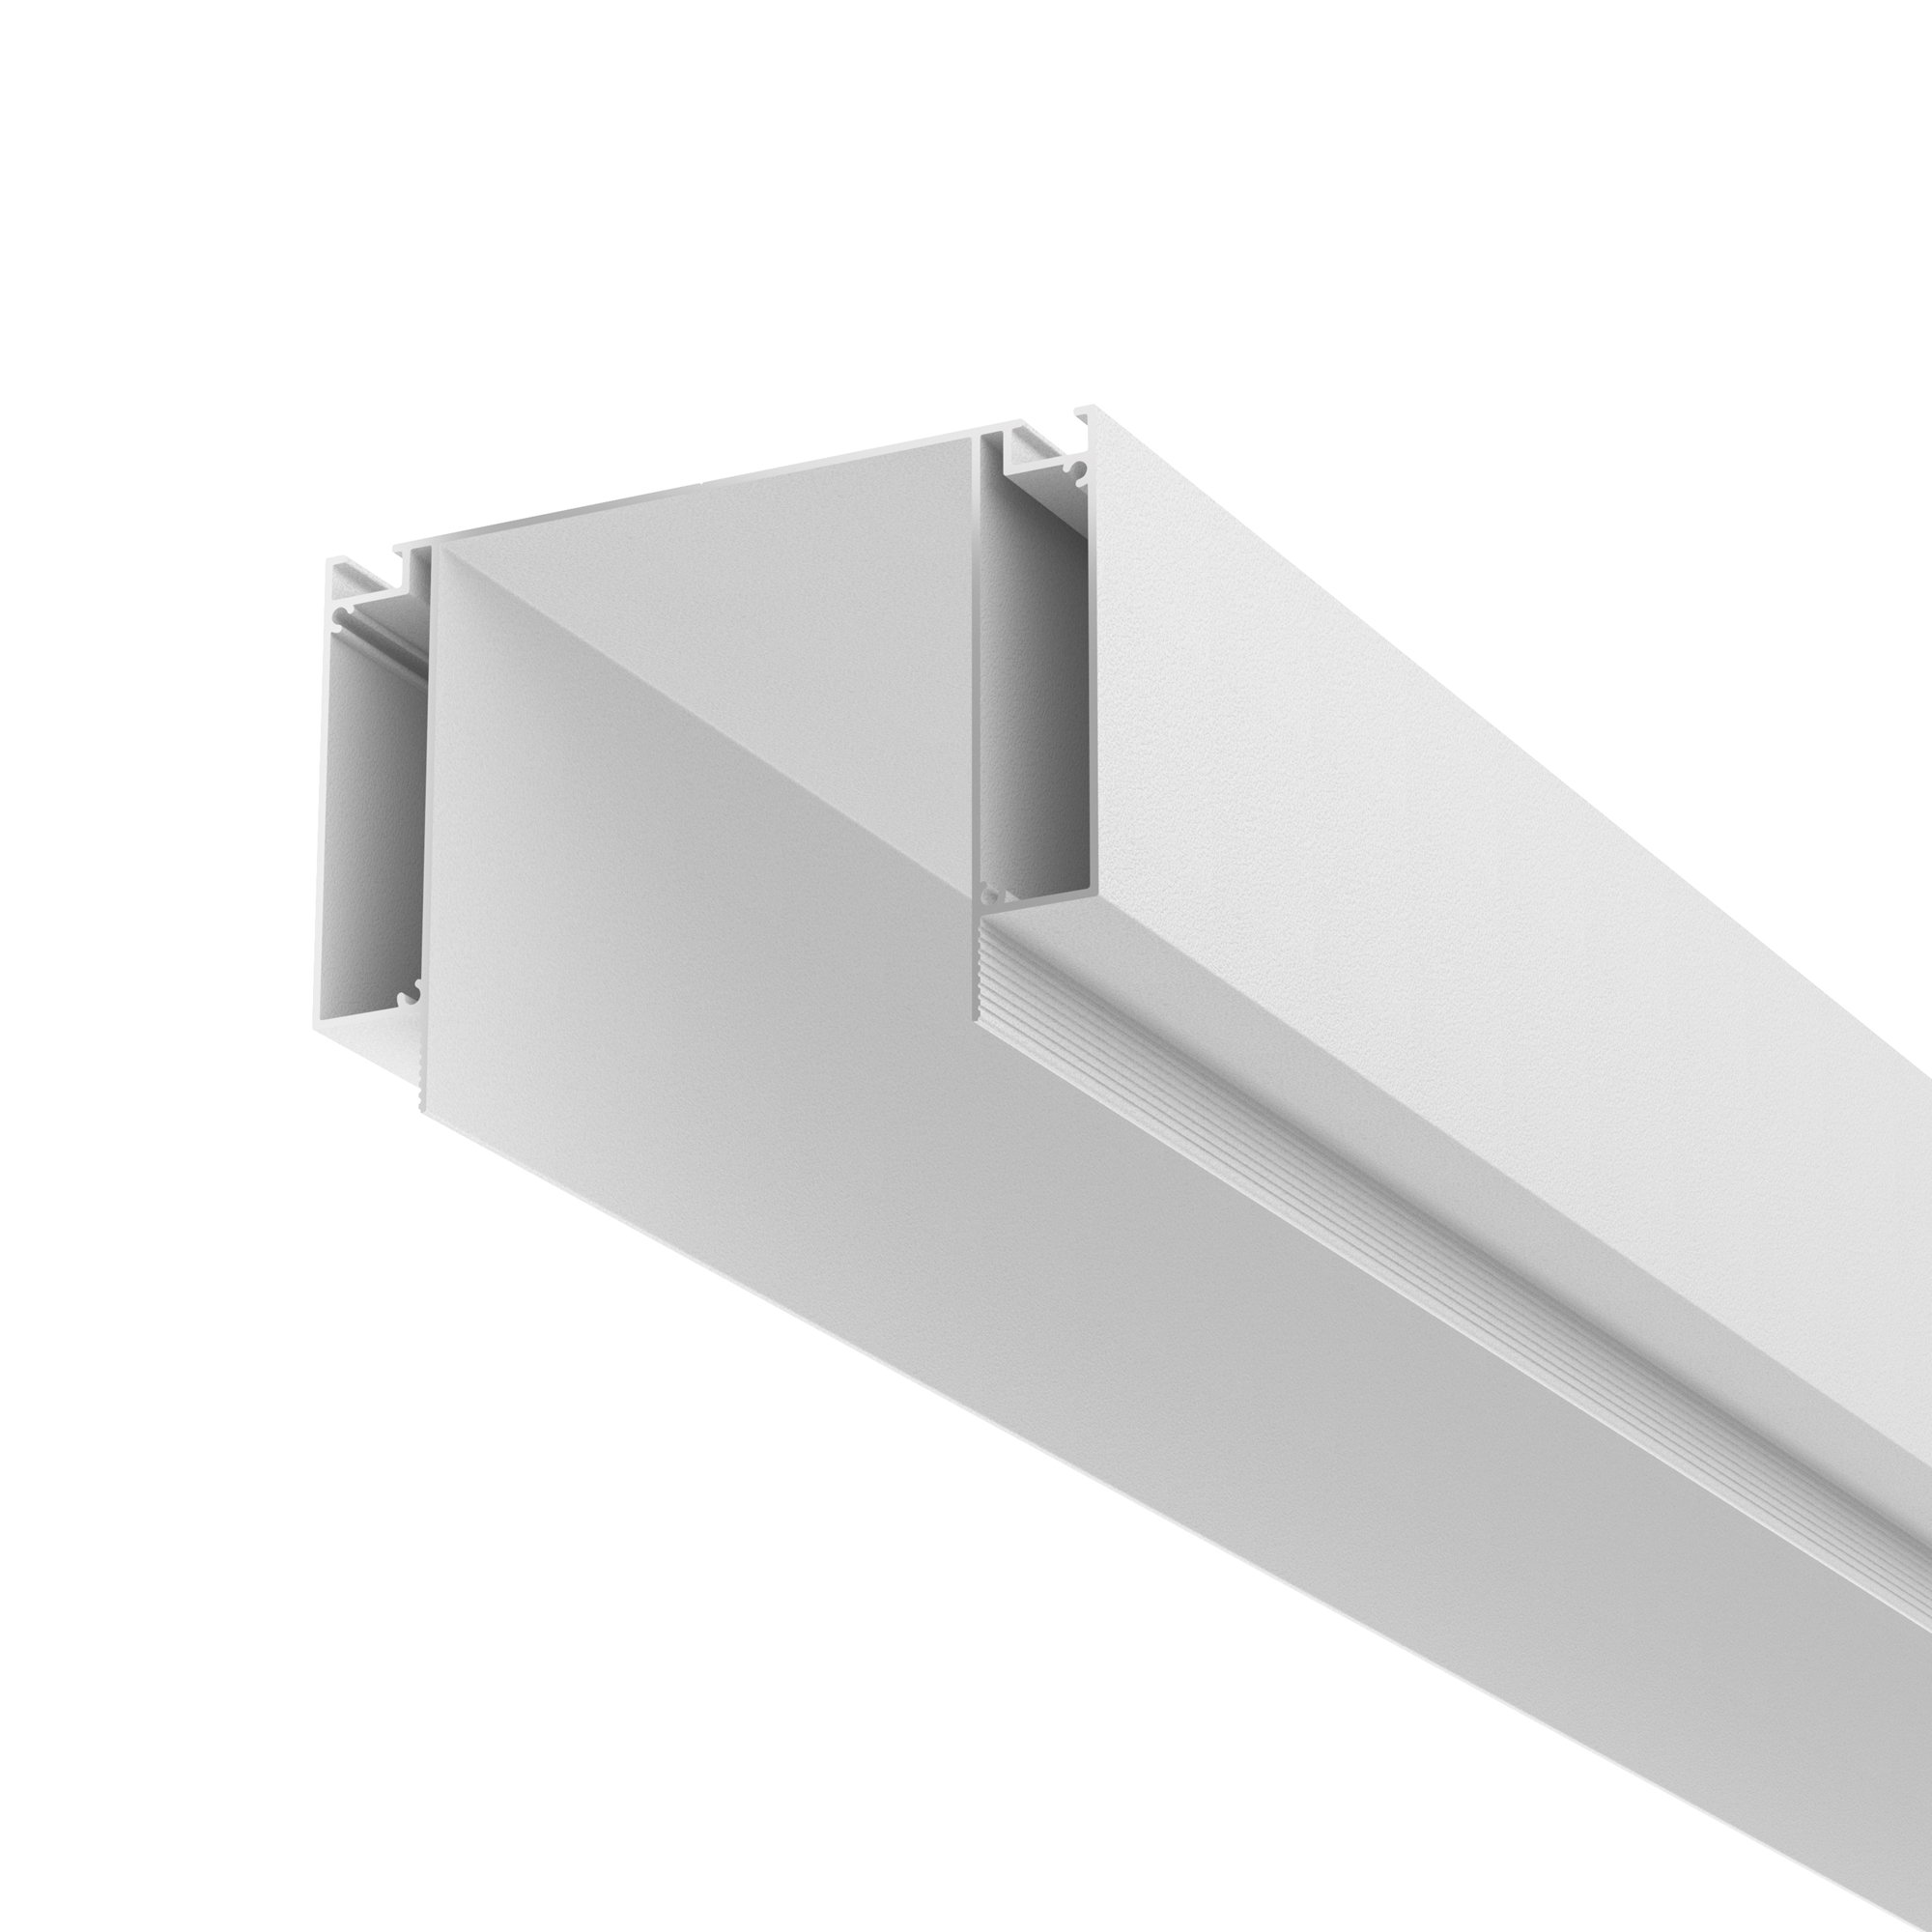 Алюминиевый профиль ниши скрытого монтажа для ГКЛ потолка, ALM-11681-PL-W-2M